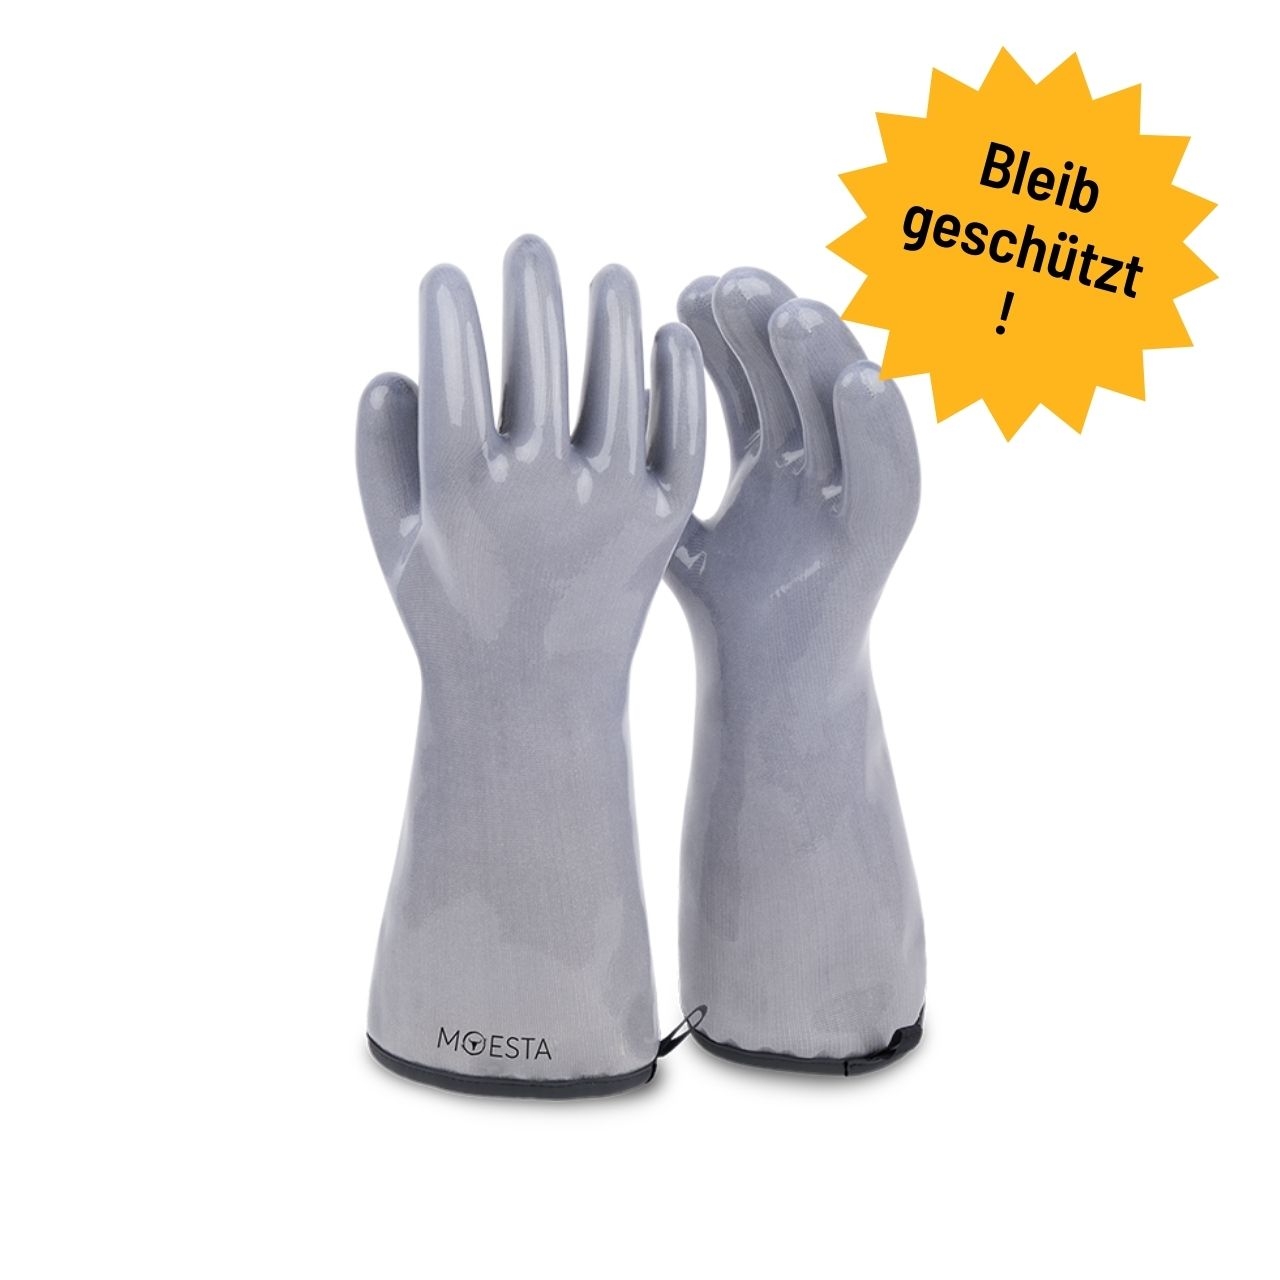 Moesta BBQ HeatPro Gloves - Grillhandschuhe aus Silikon - grau, Größe XXL